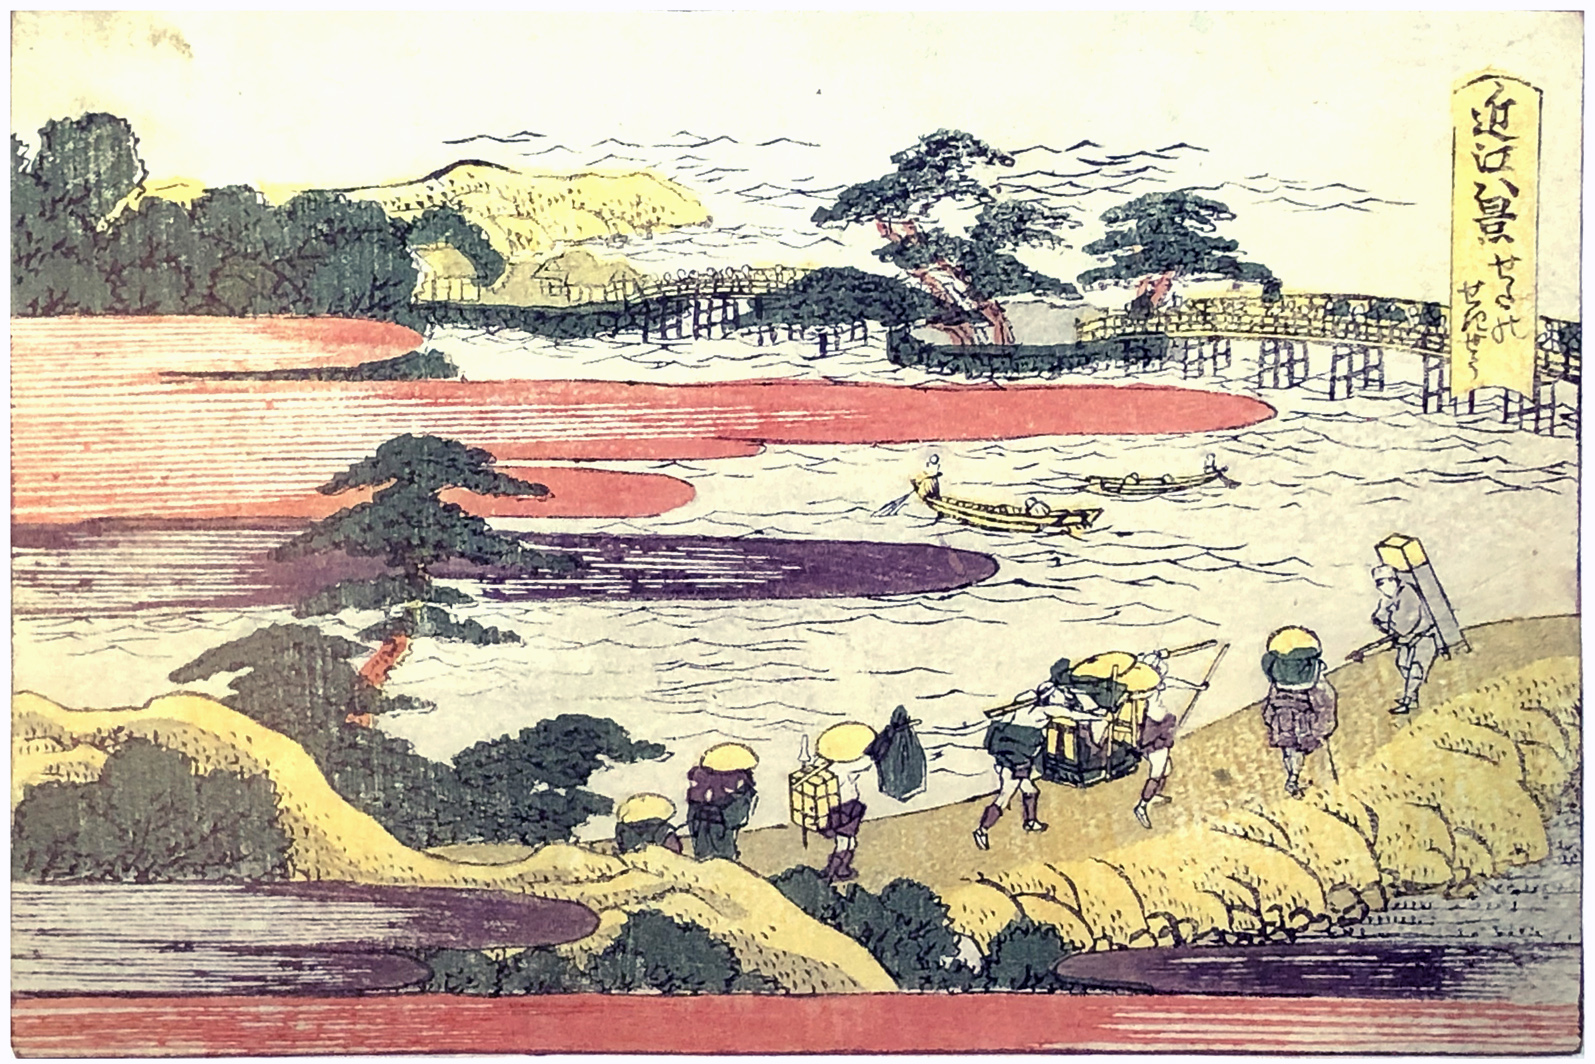 Hokusai - Evening glow at Seta - 1802 Horizontal Edition